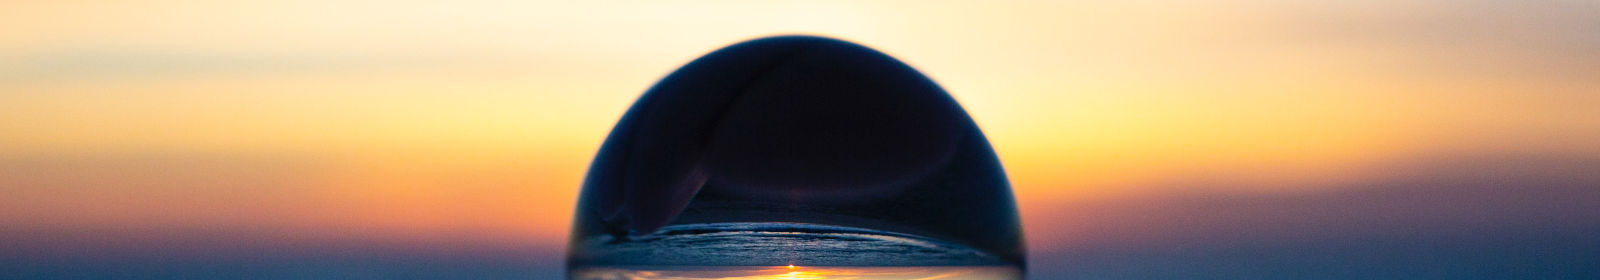 Im Hintergrund ist ein Sonnenuntergang am Meer. Im Vordergrund hält eine Hand eine Glaskugel.